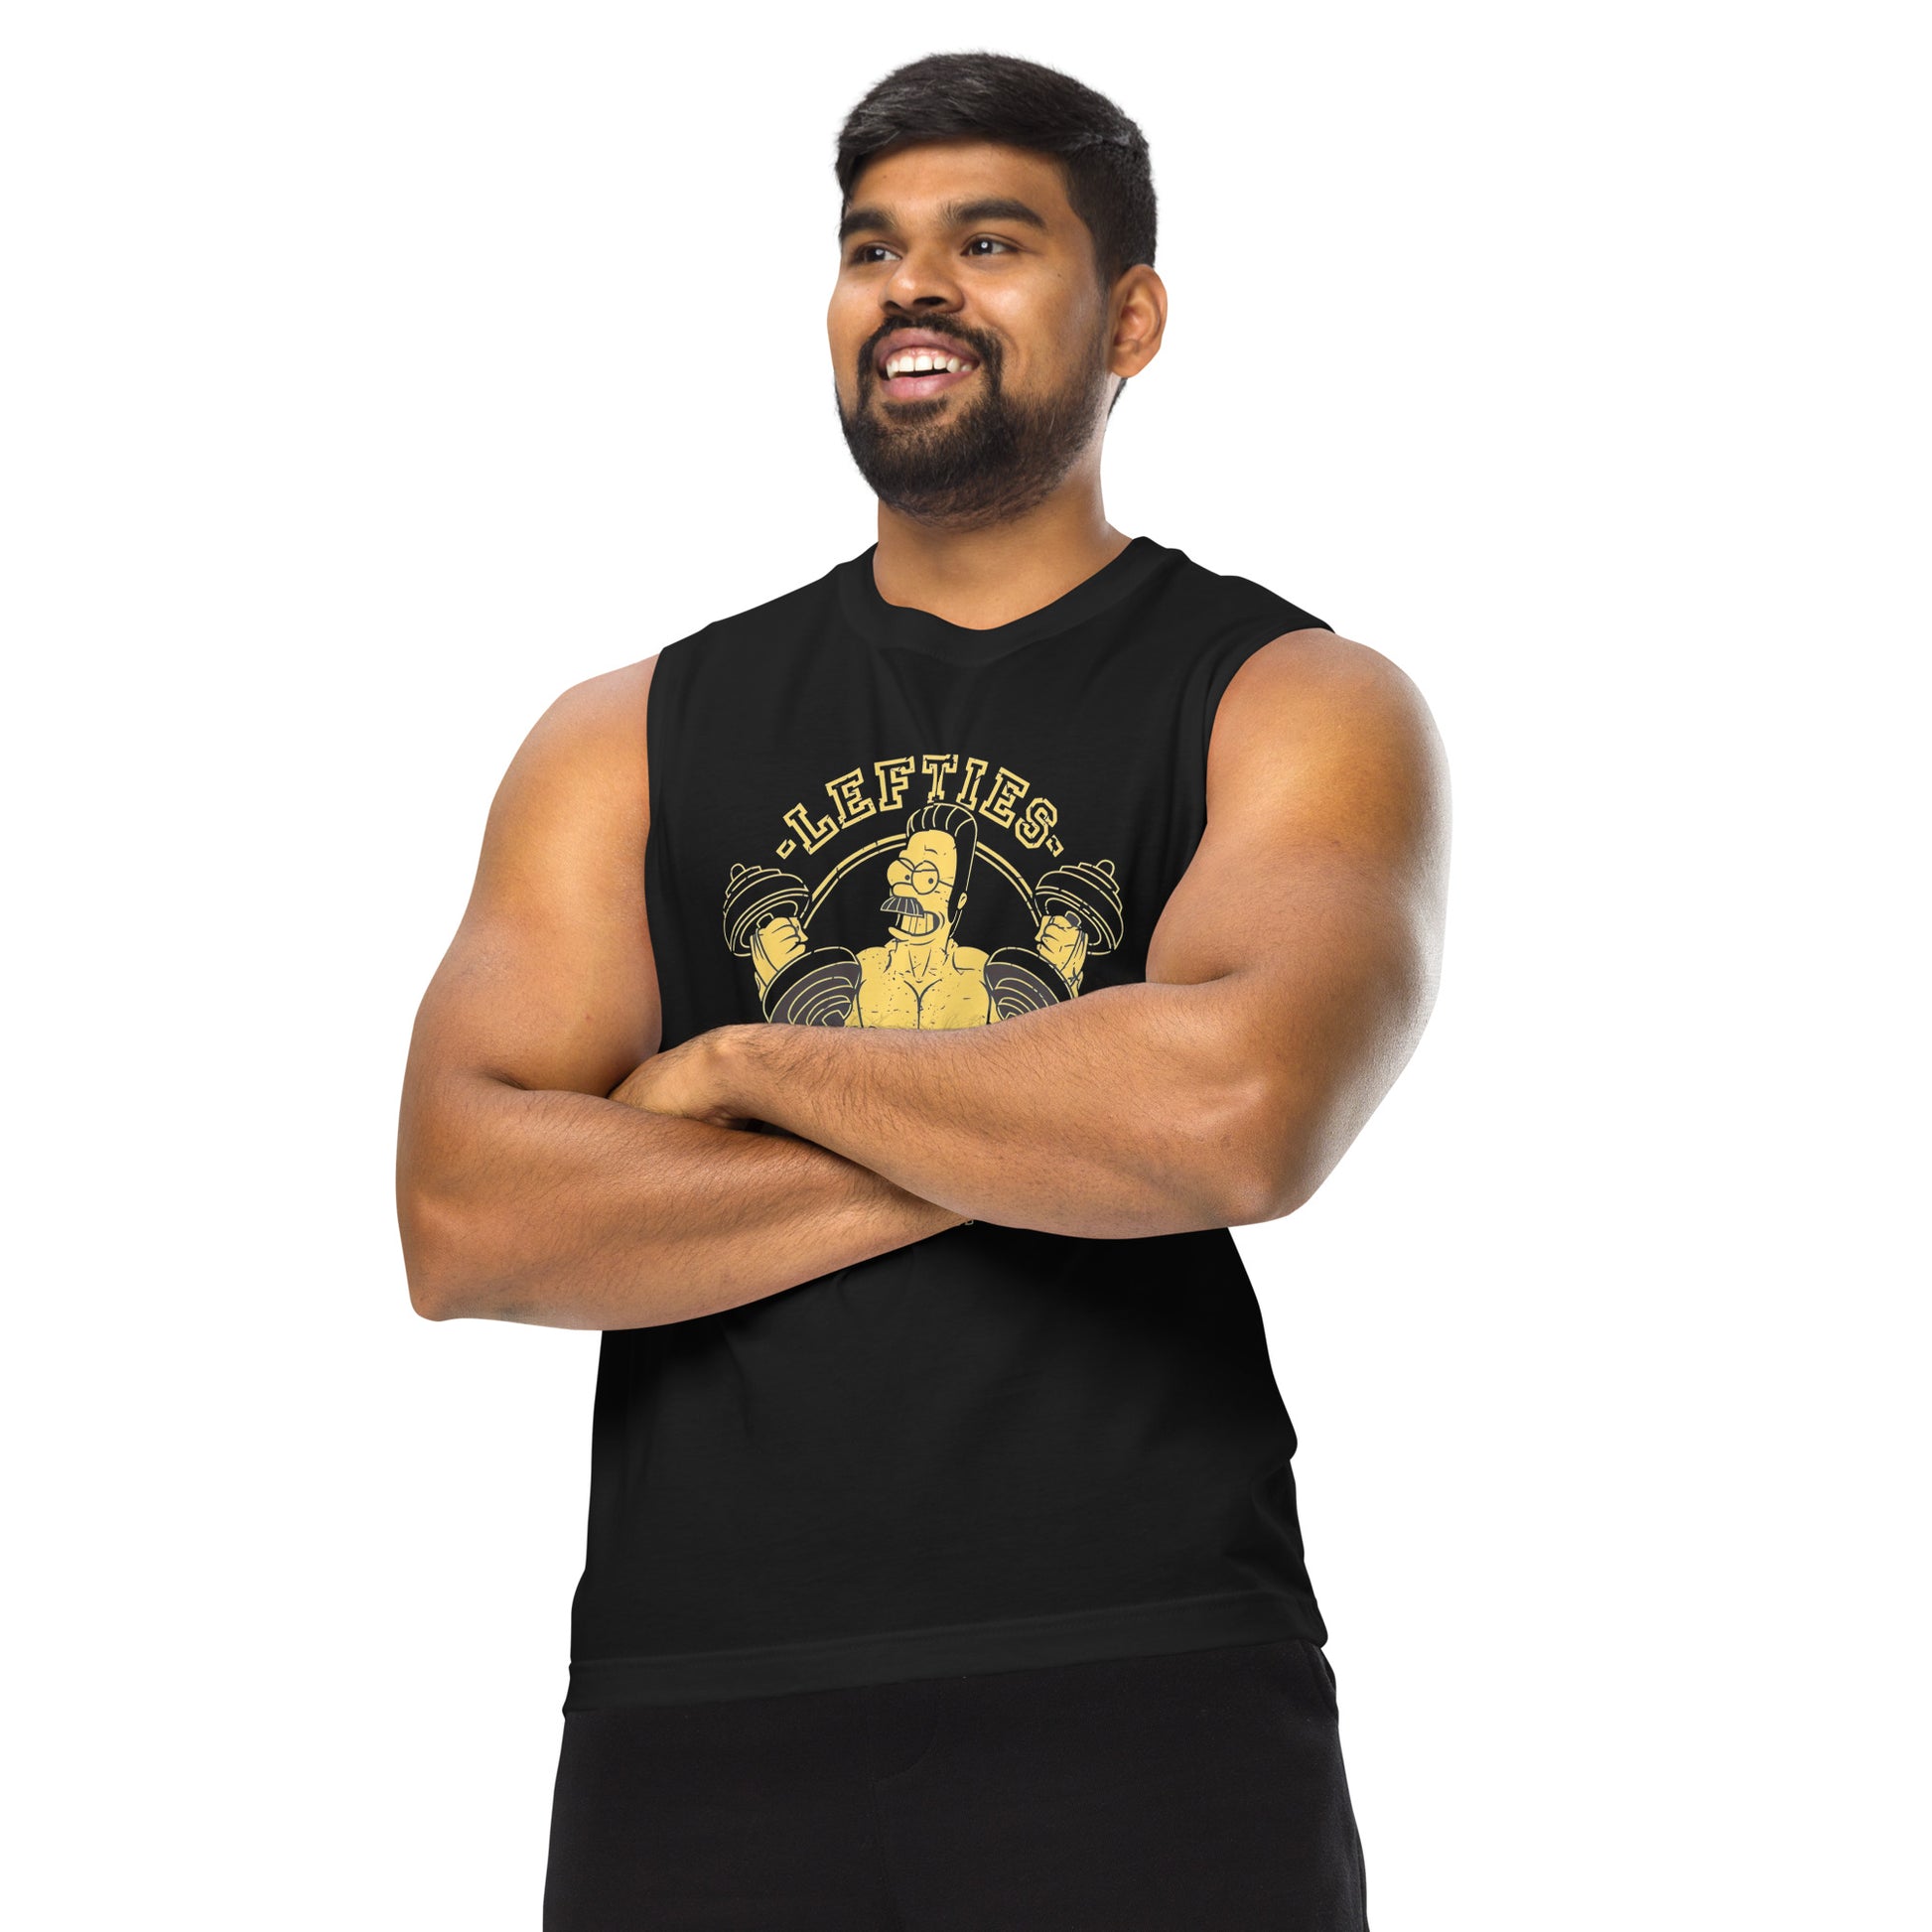 Camiseta sin mangas perfecta para entrenar, Camiseta Lefties Gym comprala en línea y experimenta el mejor servicio al cliente. envíos internacionales.